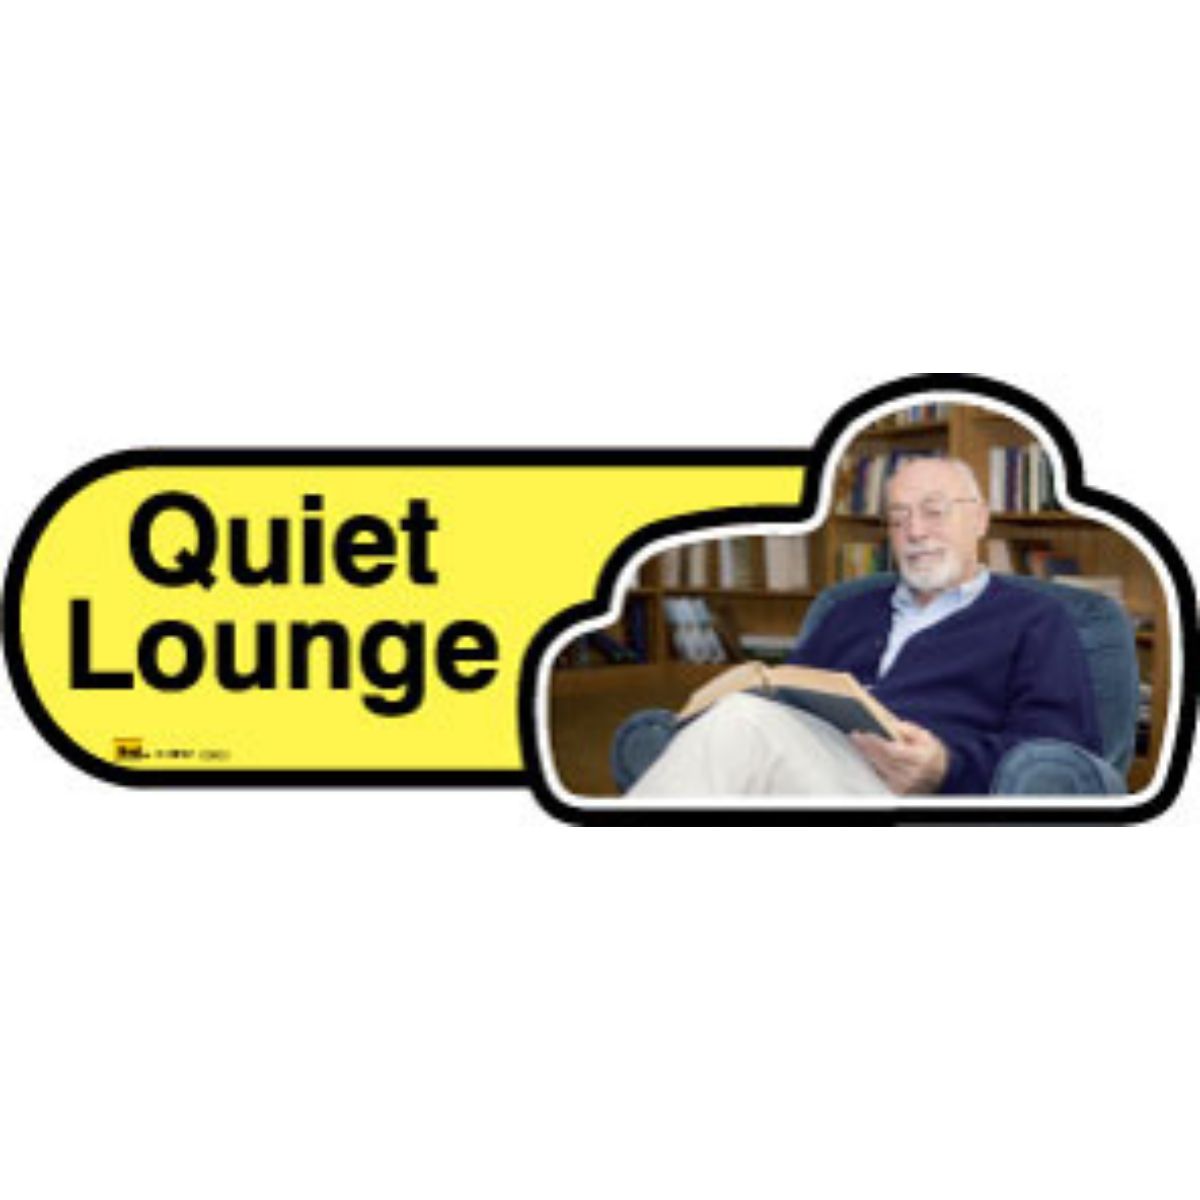 Quiet Lounge Sign, 30cm